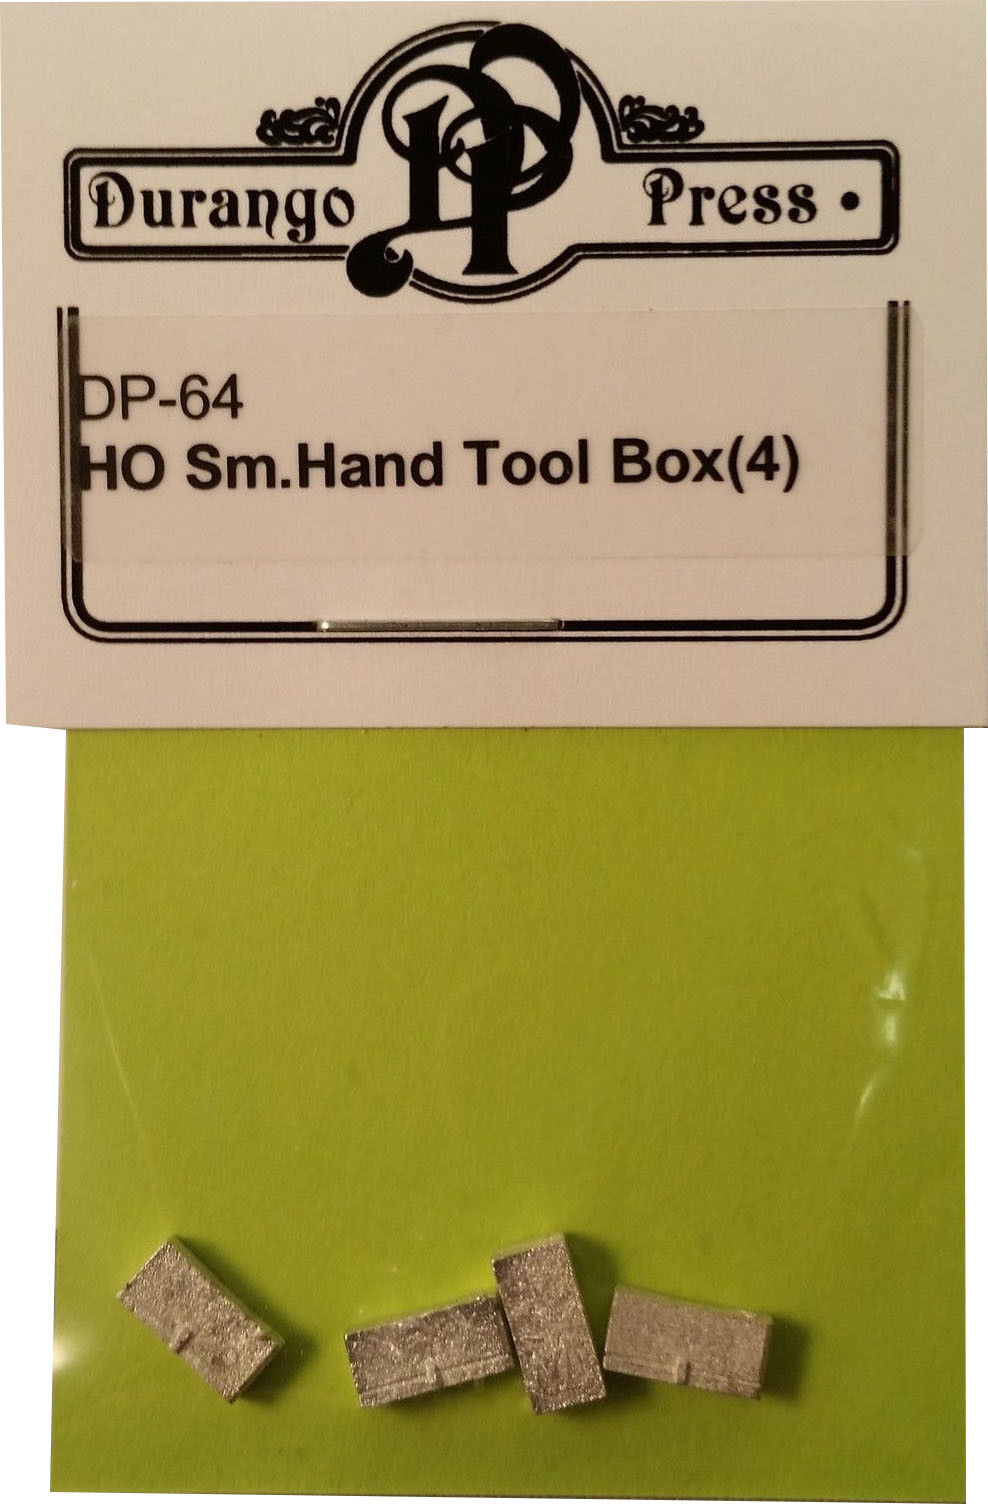 Durango Press 64 Ho Small Hand Tool Box